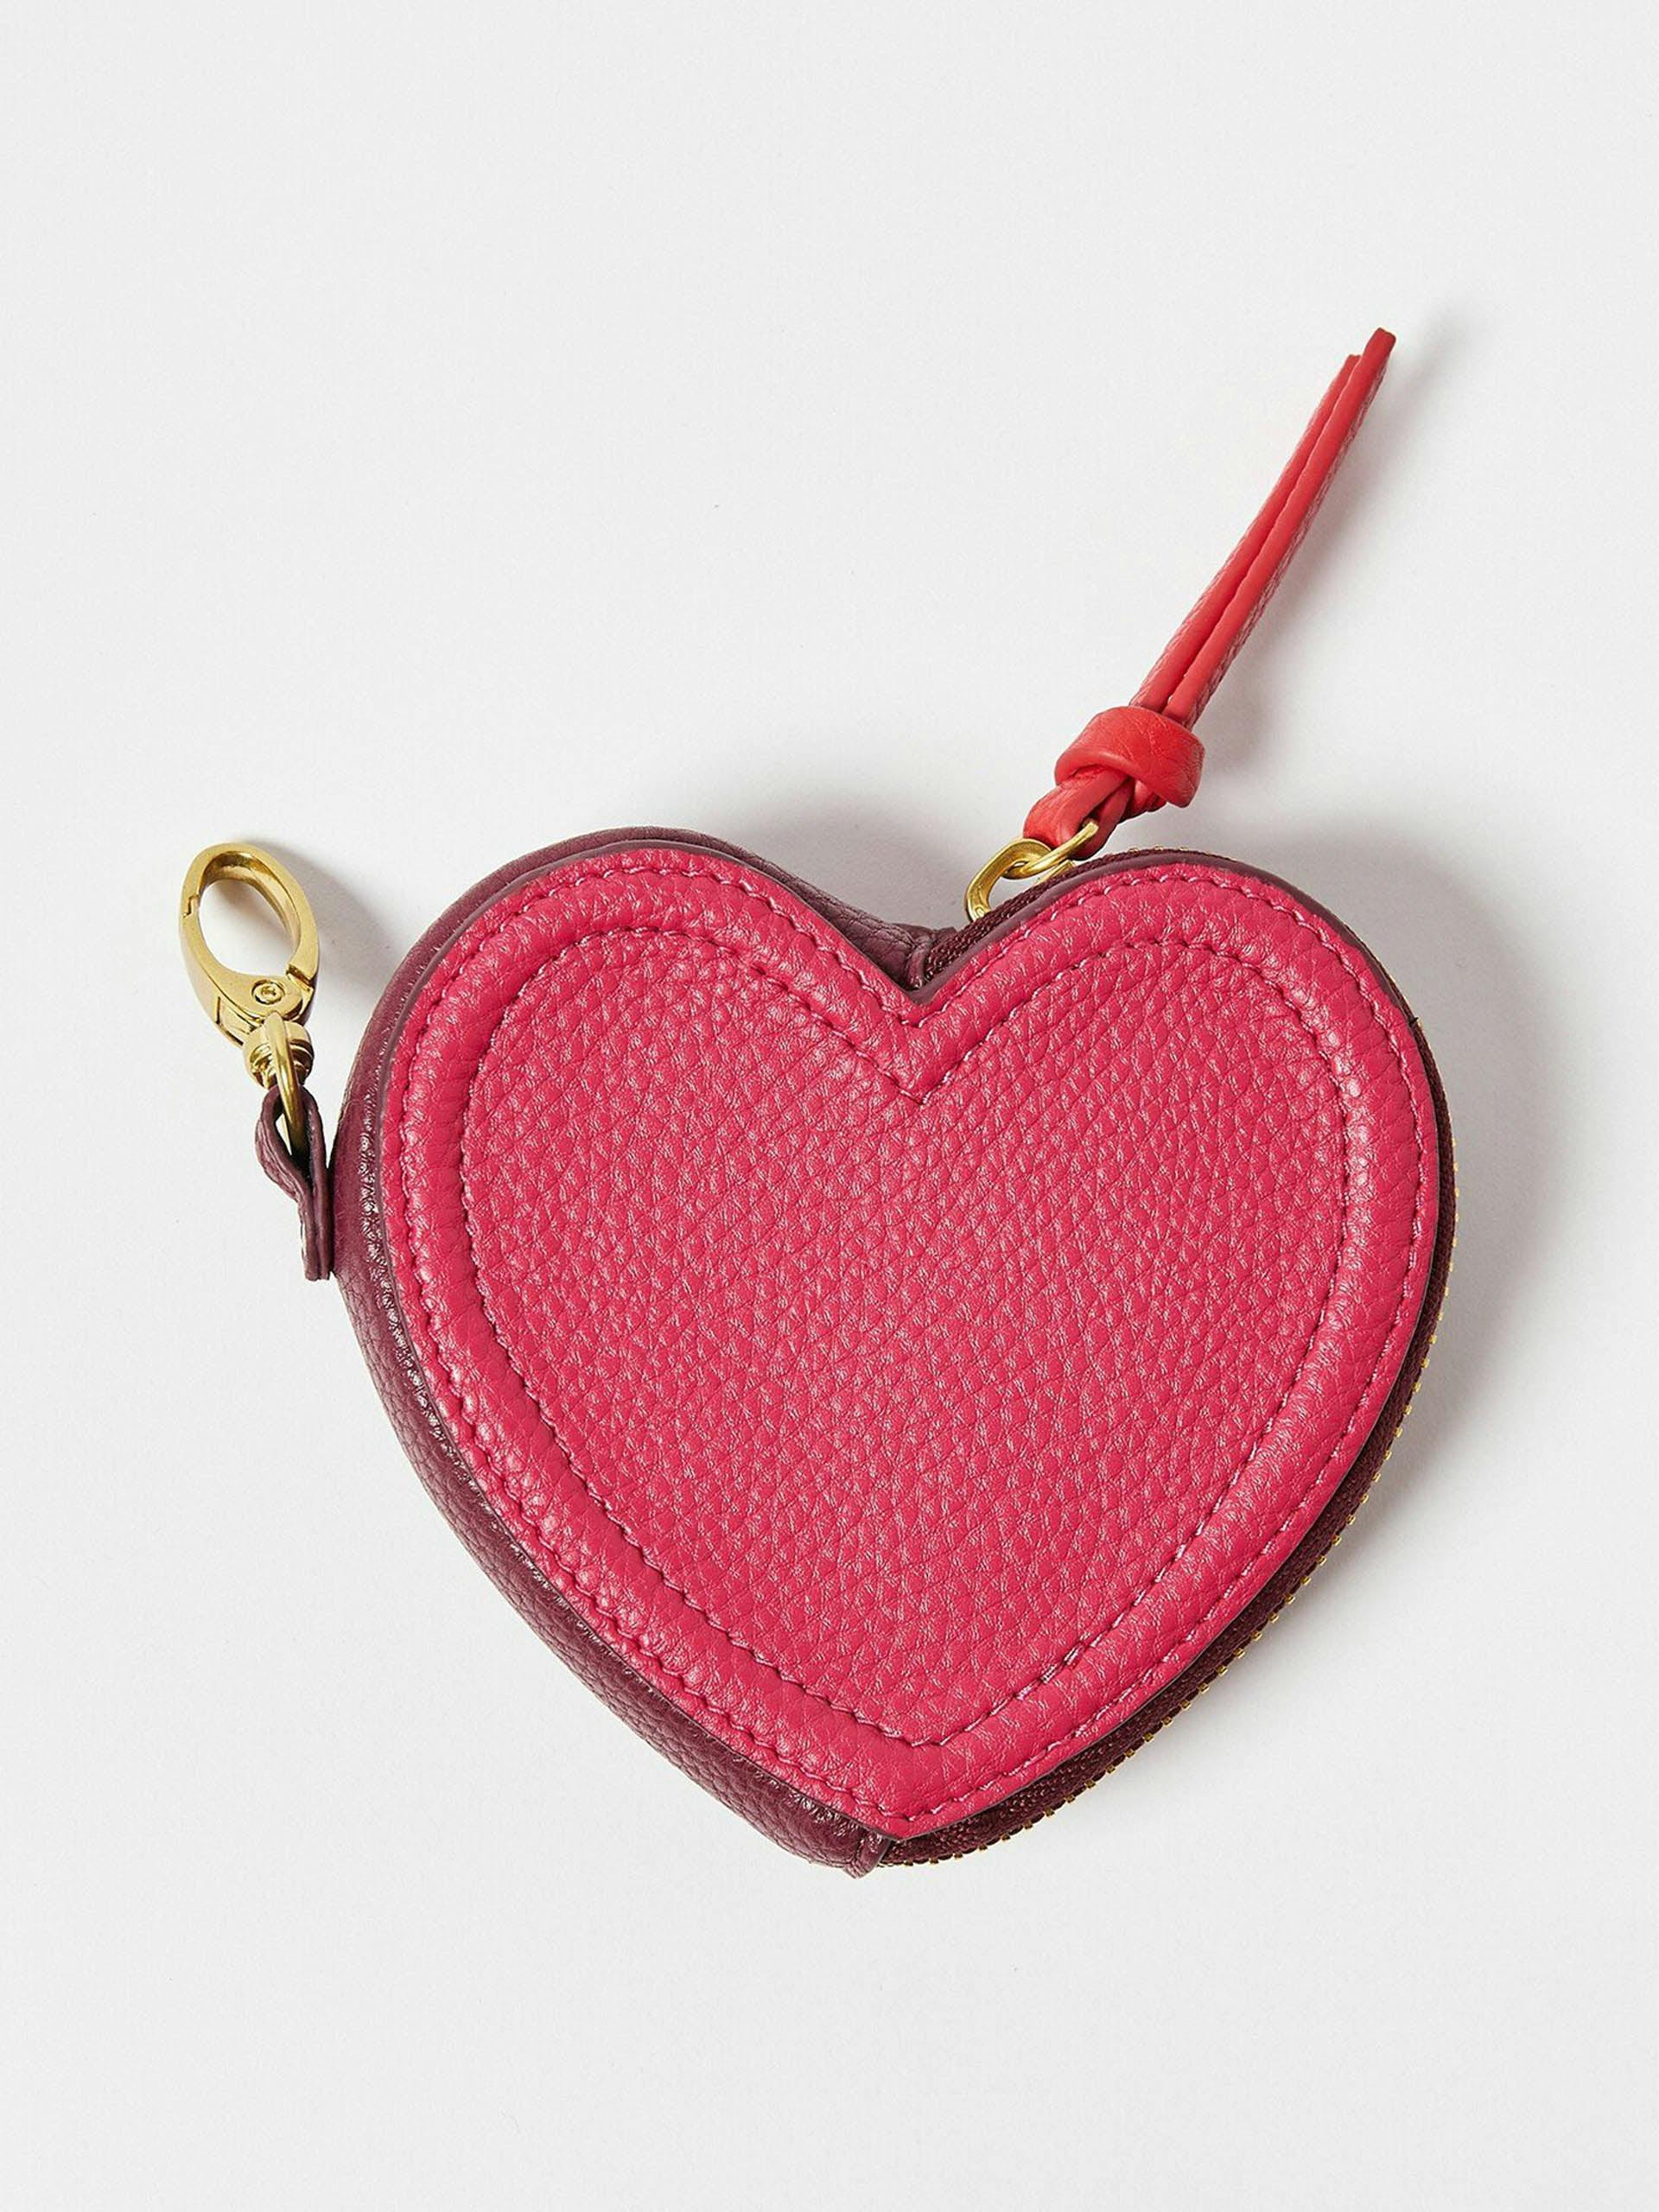 Hazel raspberry pink heart mirror purse